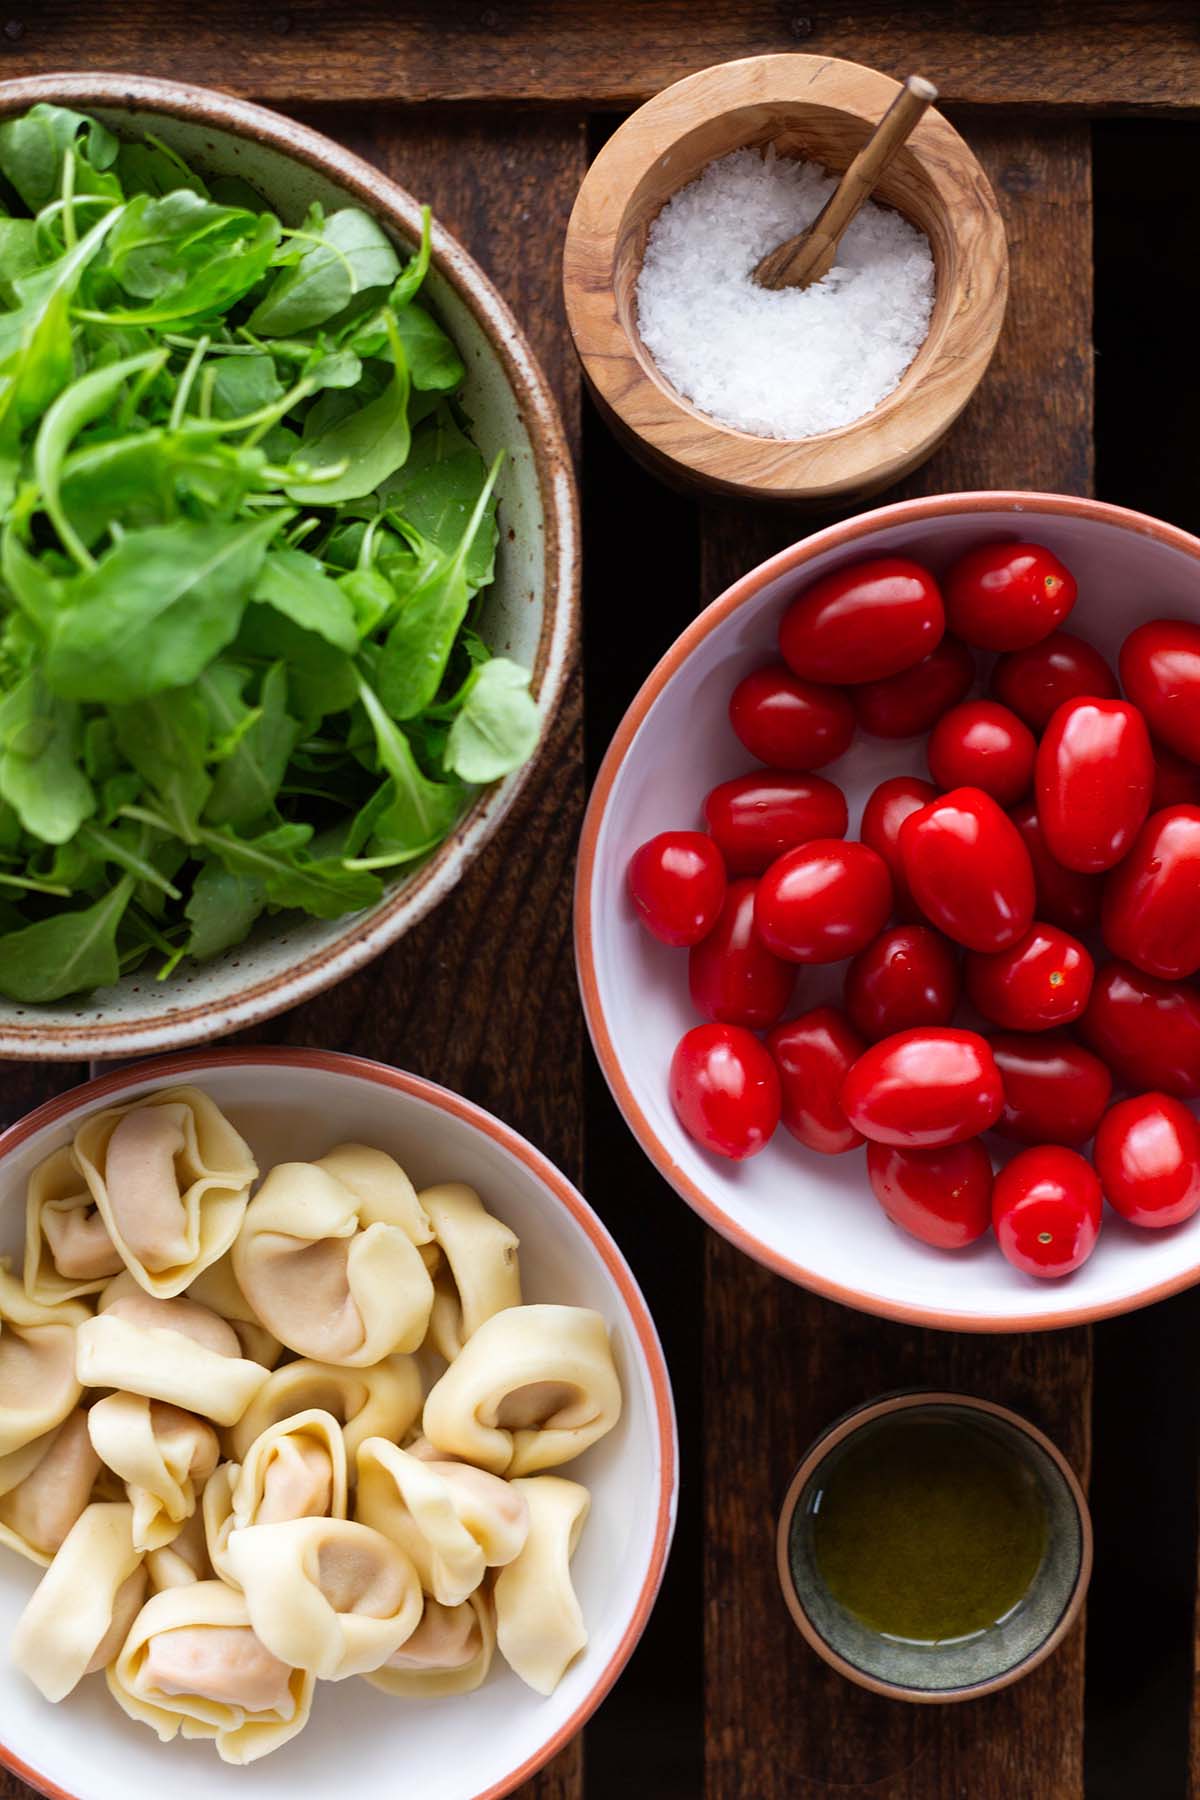 Zutaten für Tortellini-Pfanne auf einer Holzkiste: Tortellini, Rucola, Tomaten, Parmesan, Olivenöl und Salz